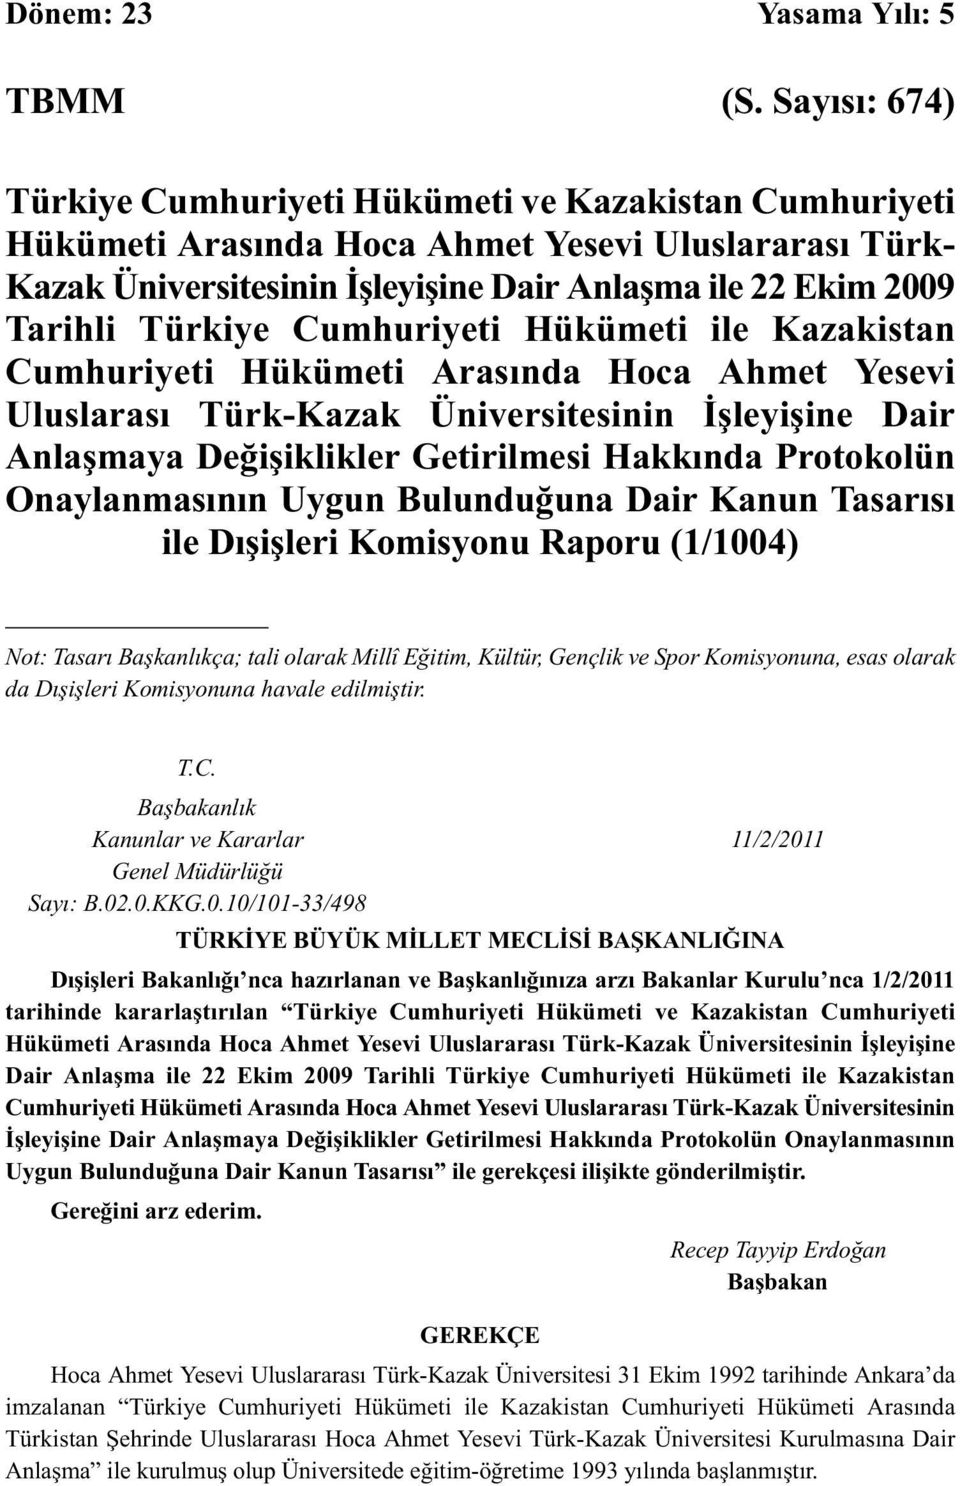 Türkiye Cumhuriyeti Hükümeti ile Kazakistan Cumhuriyeti Hükümeti Arasında Hoca Ahmet Yesevi Uluslarası Türk-Kazak Üniversitesinin İşleyişine Dair Anlaşmaya Değişiklikler Getirilmesi Hakkında